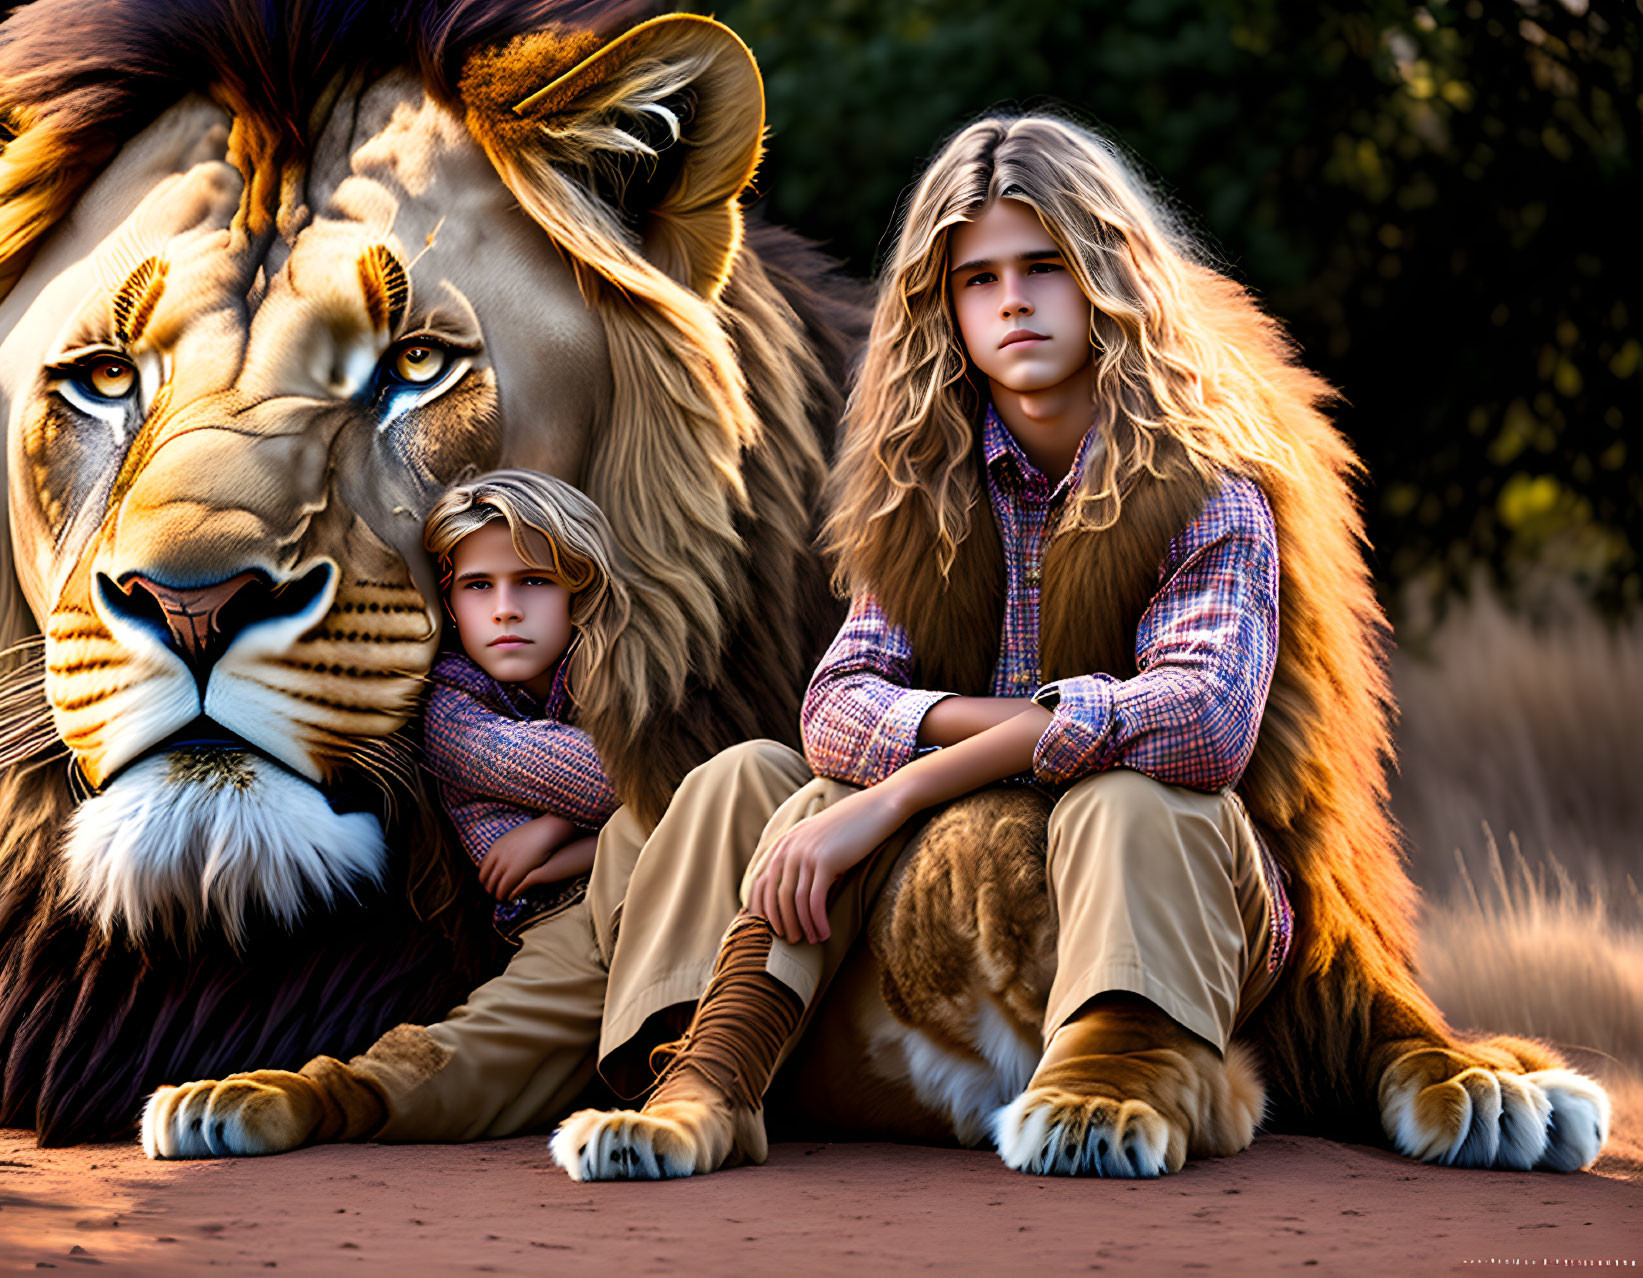 שני נערים יושבים ליד אריה ענק